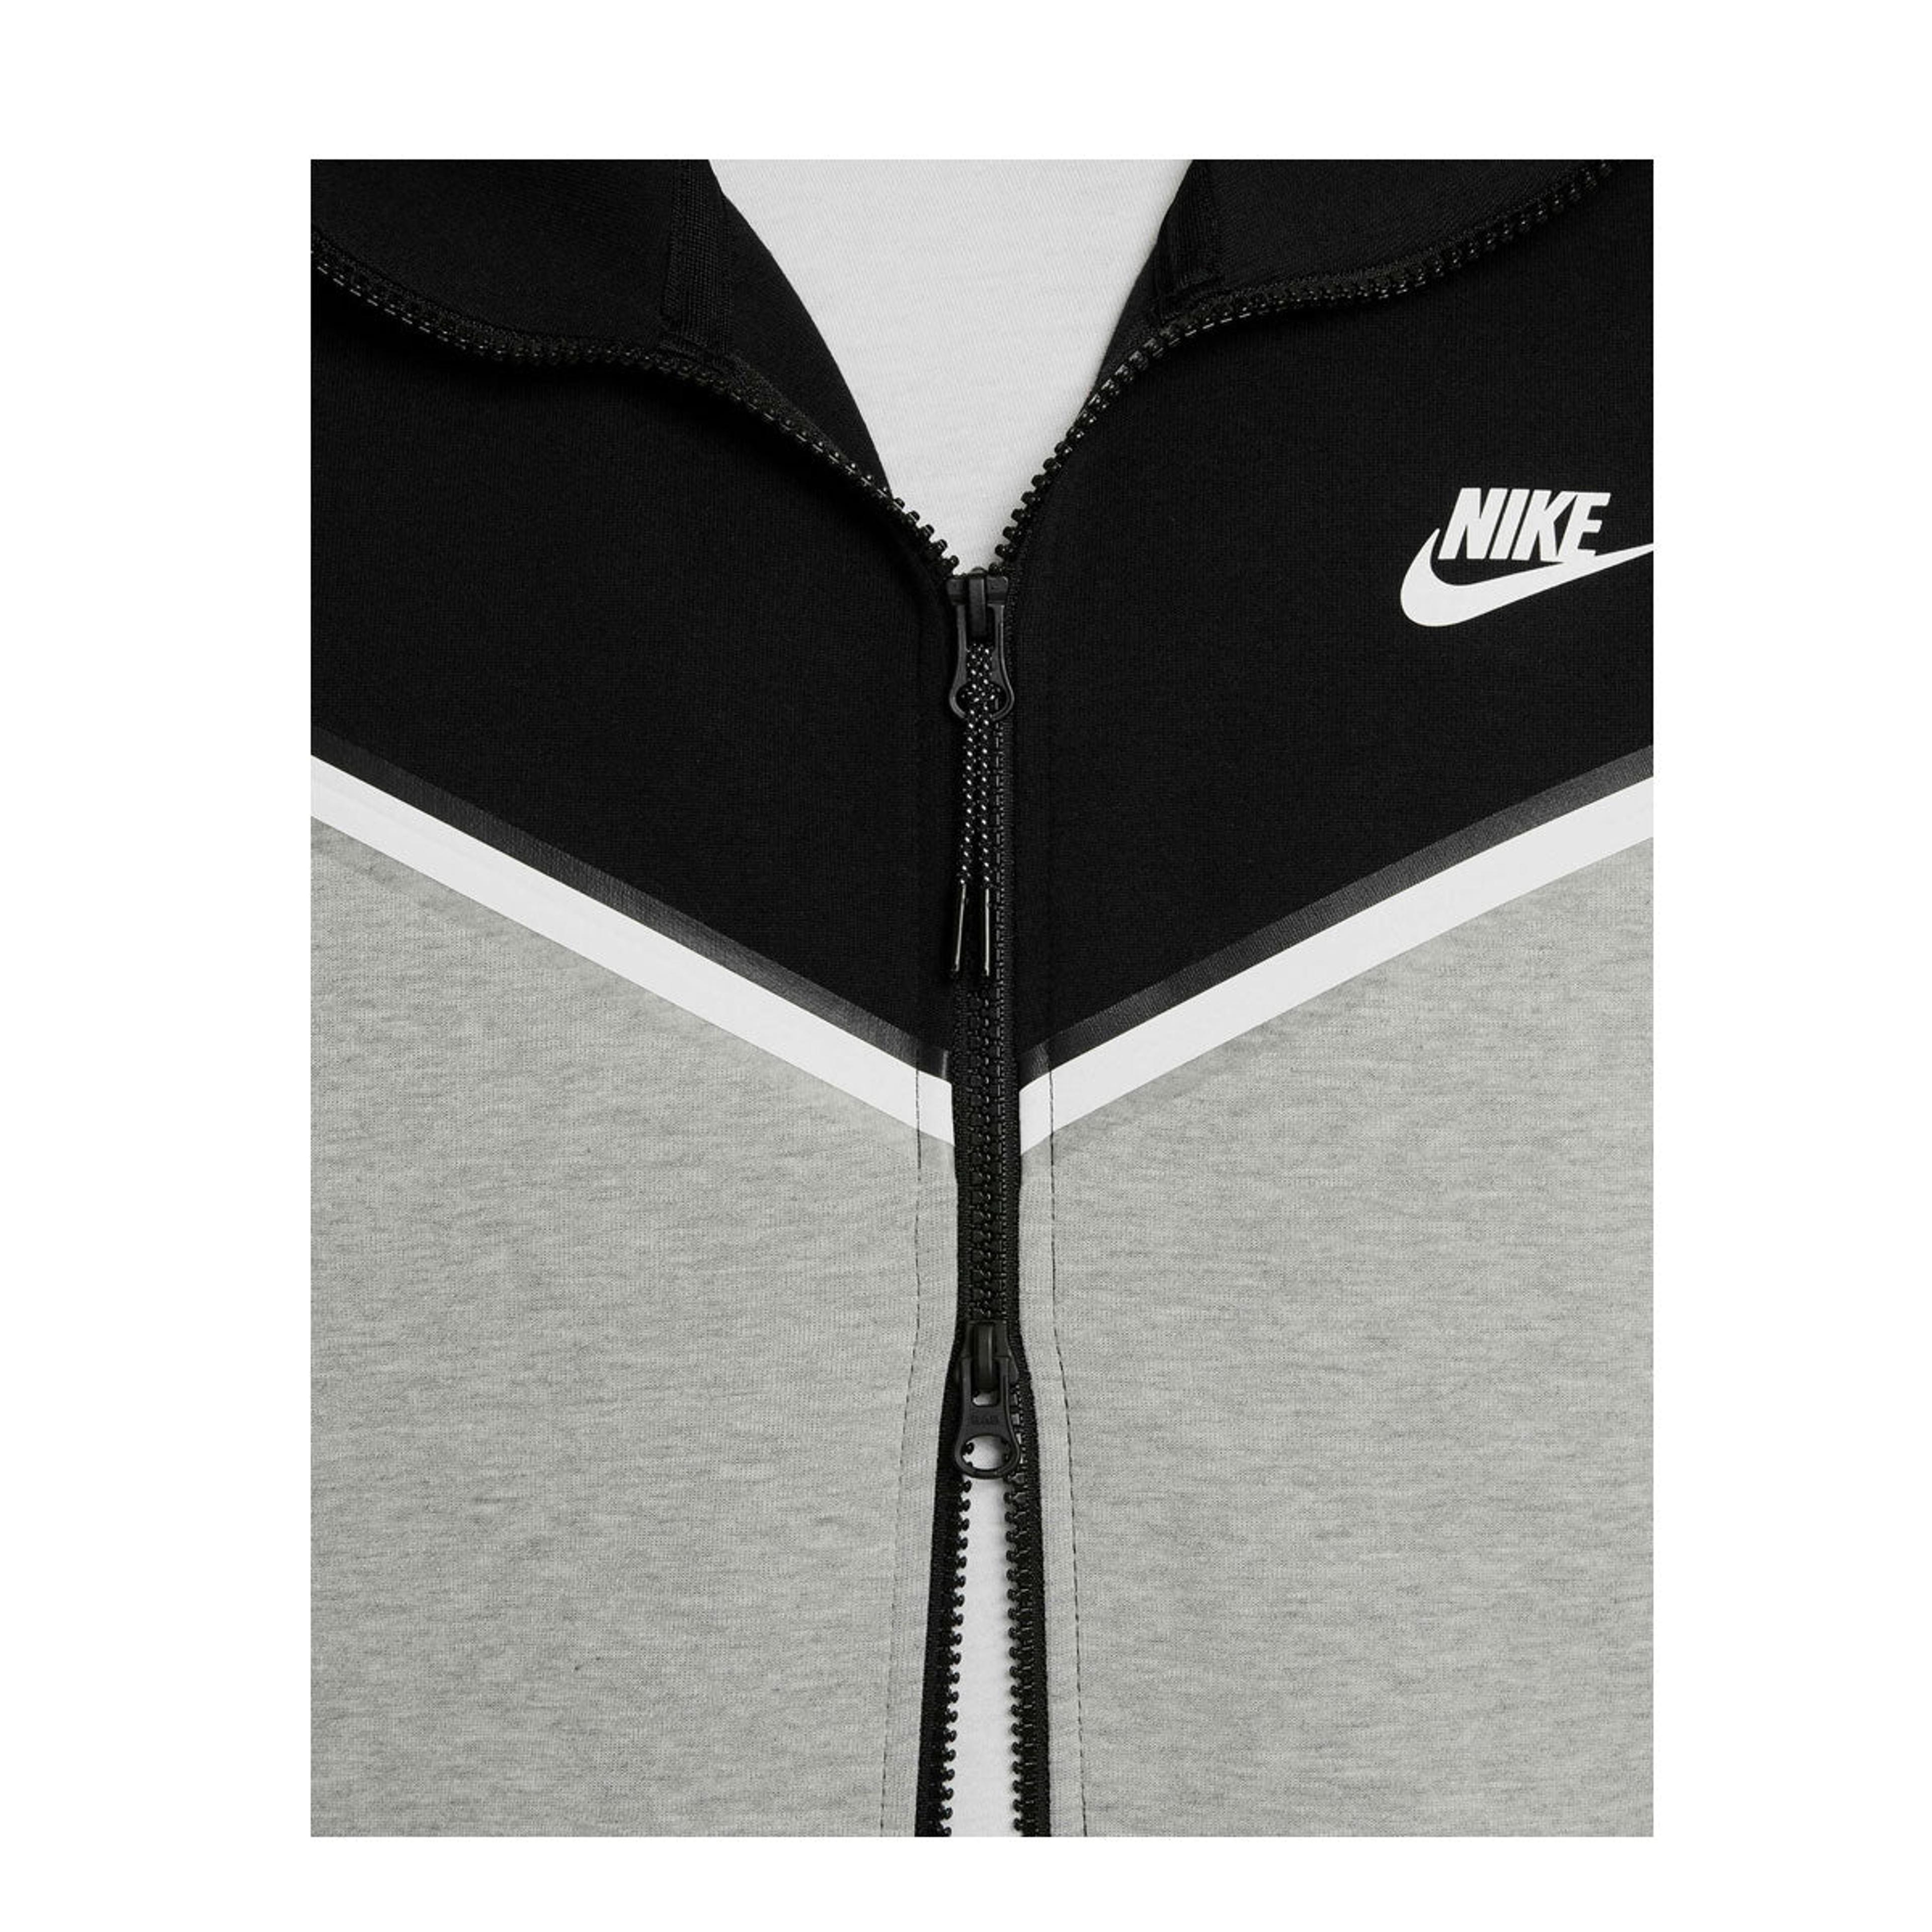 Alternate View 4 of Nike Men's Sportswear Tech Fleece Full-Zip Hoodie Black Grey Hea